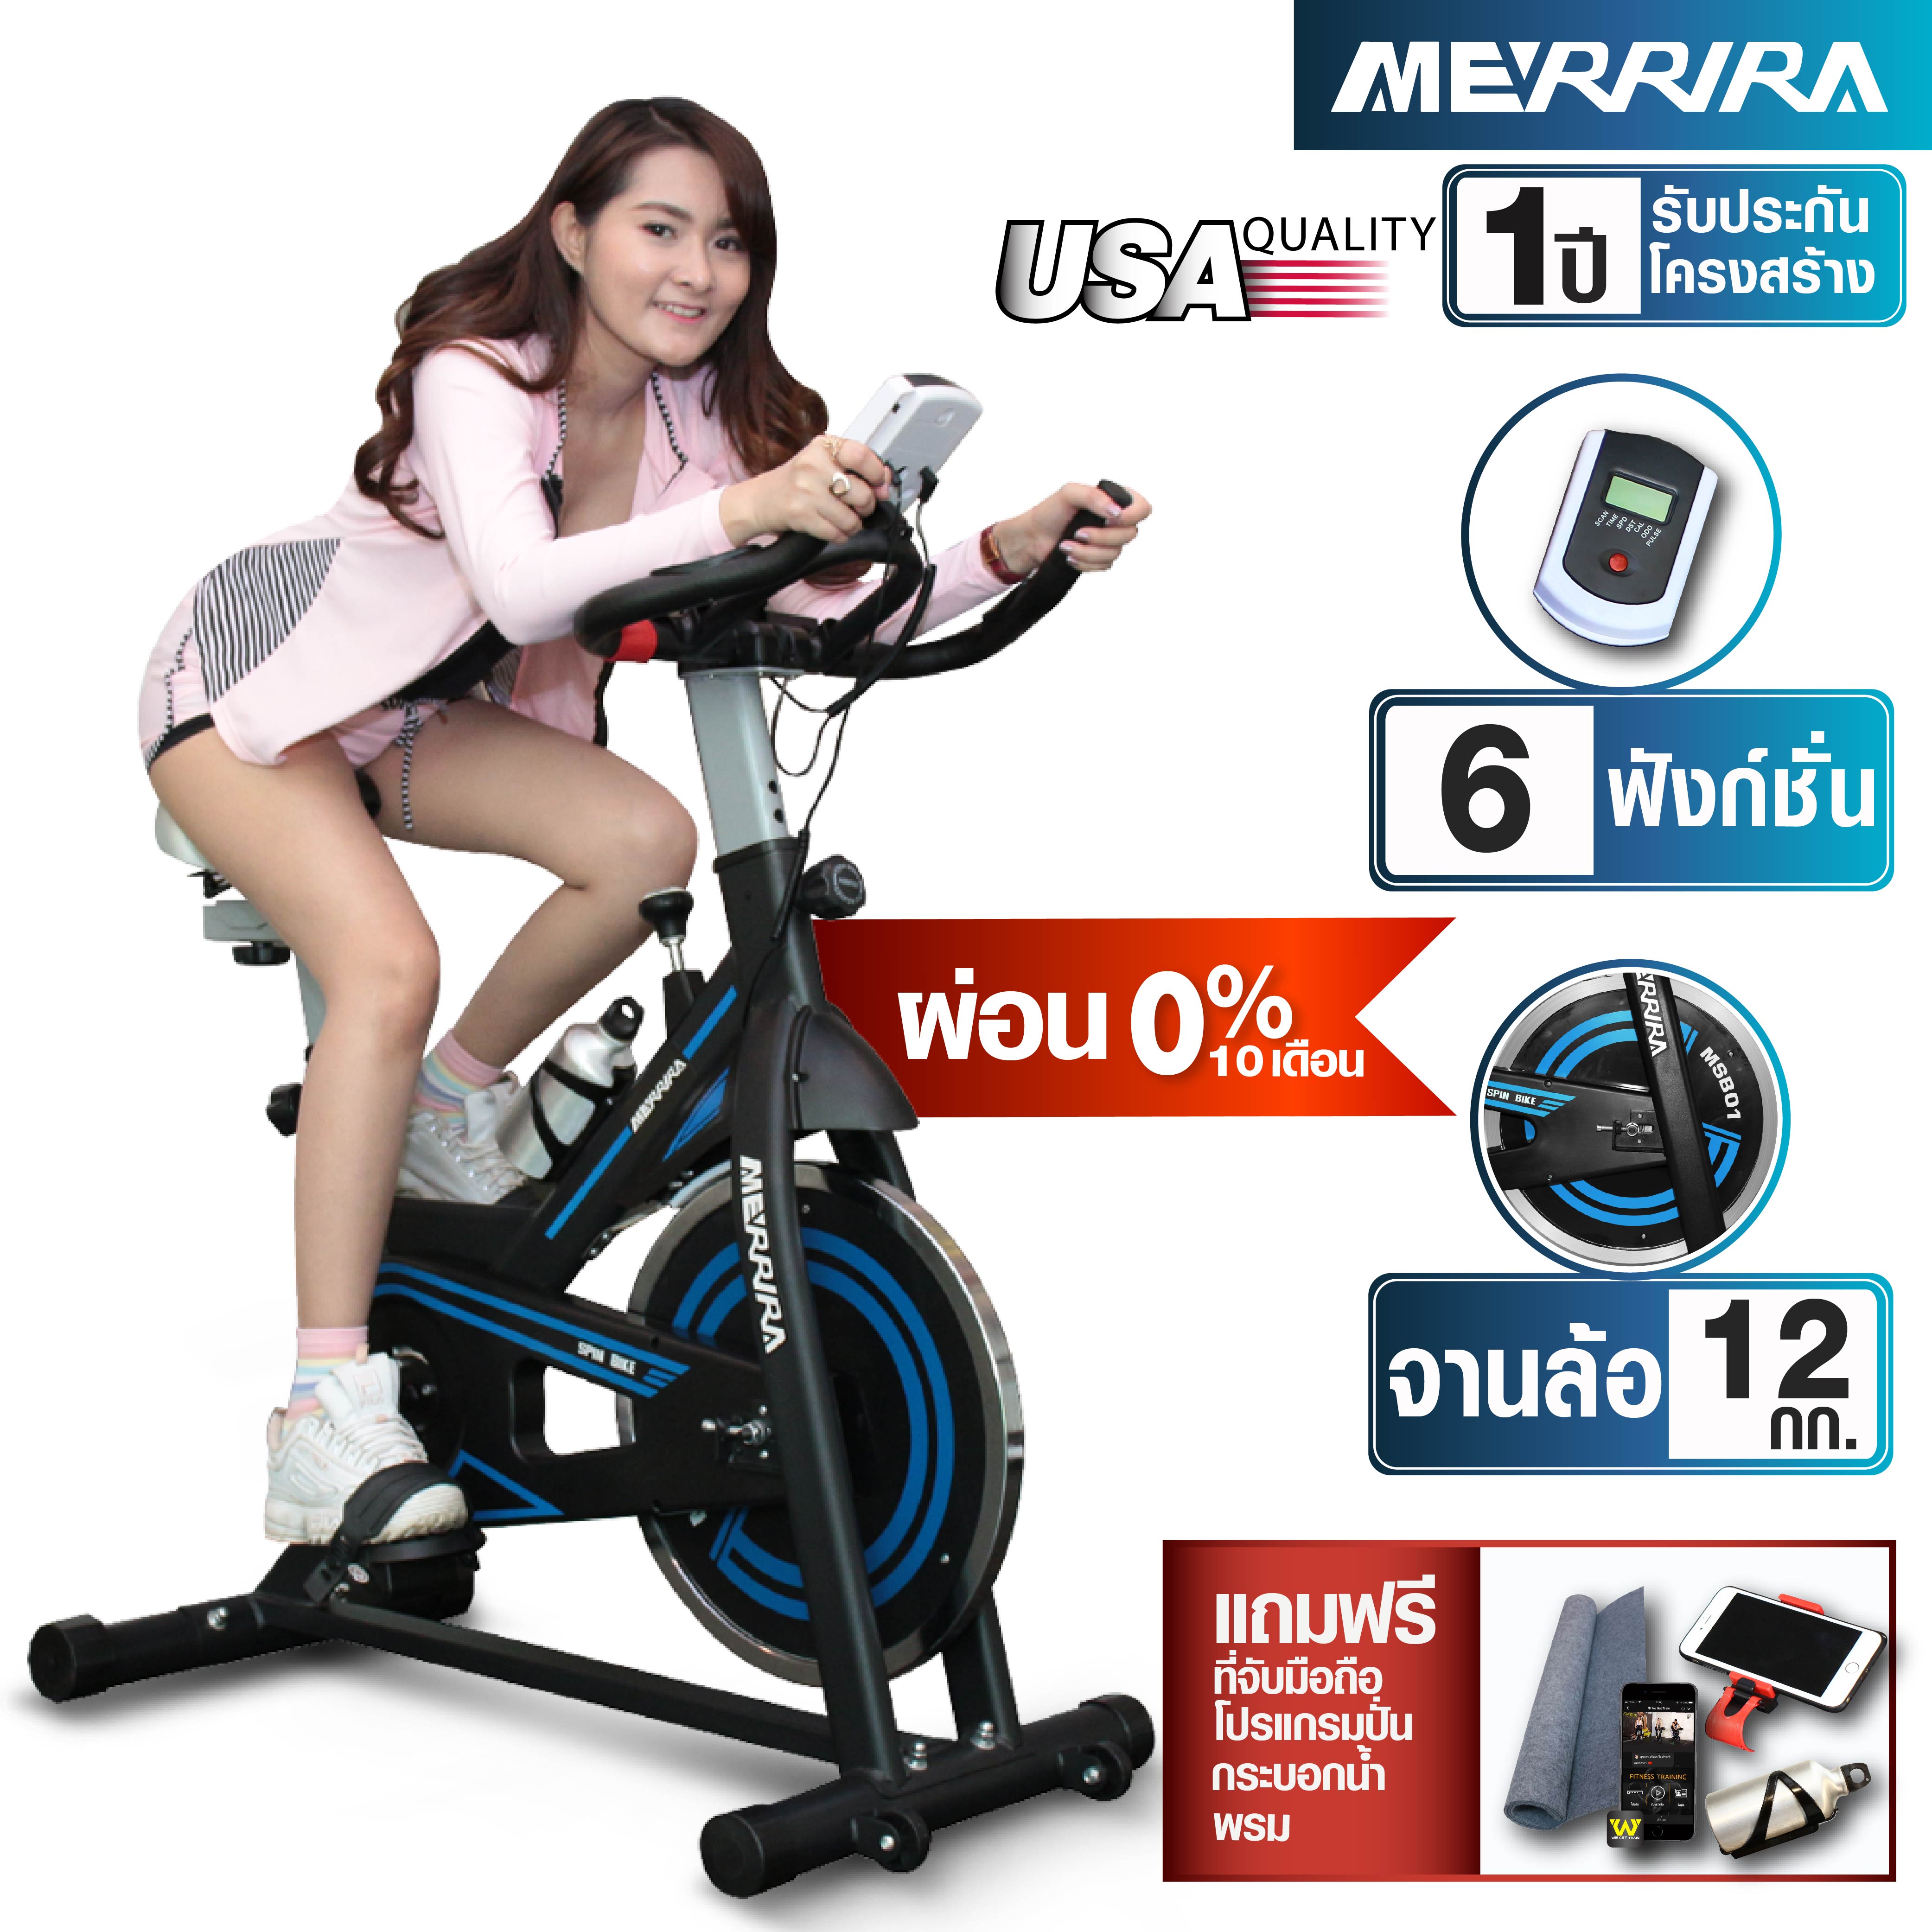 [ผ่อน 0% ส่งฟรี] MERRIRA จักรยาน Spin Bike รุ่น MSB01 จักรยานออกกำลังกาย จักรยานฟิตเนส เครื่องปั่นจักรยาน เครื่องออกกำลังกายจักรยาน Exercise Bike สปินไบค์ Spinning Bike - ฟรี ! พรมรอง ที่ยึดมือถือติดแฮนด์ กระบอกน้ำ โปรแกรมปั่นจักรยานโดยโค้ชทีมชาติ